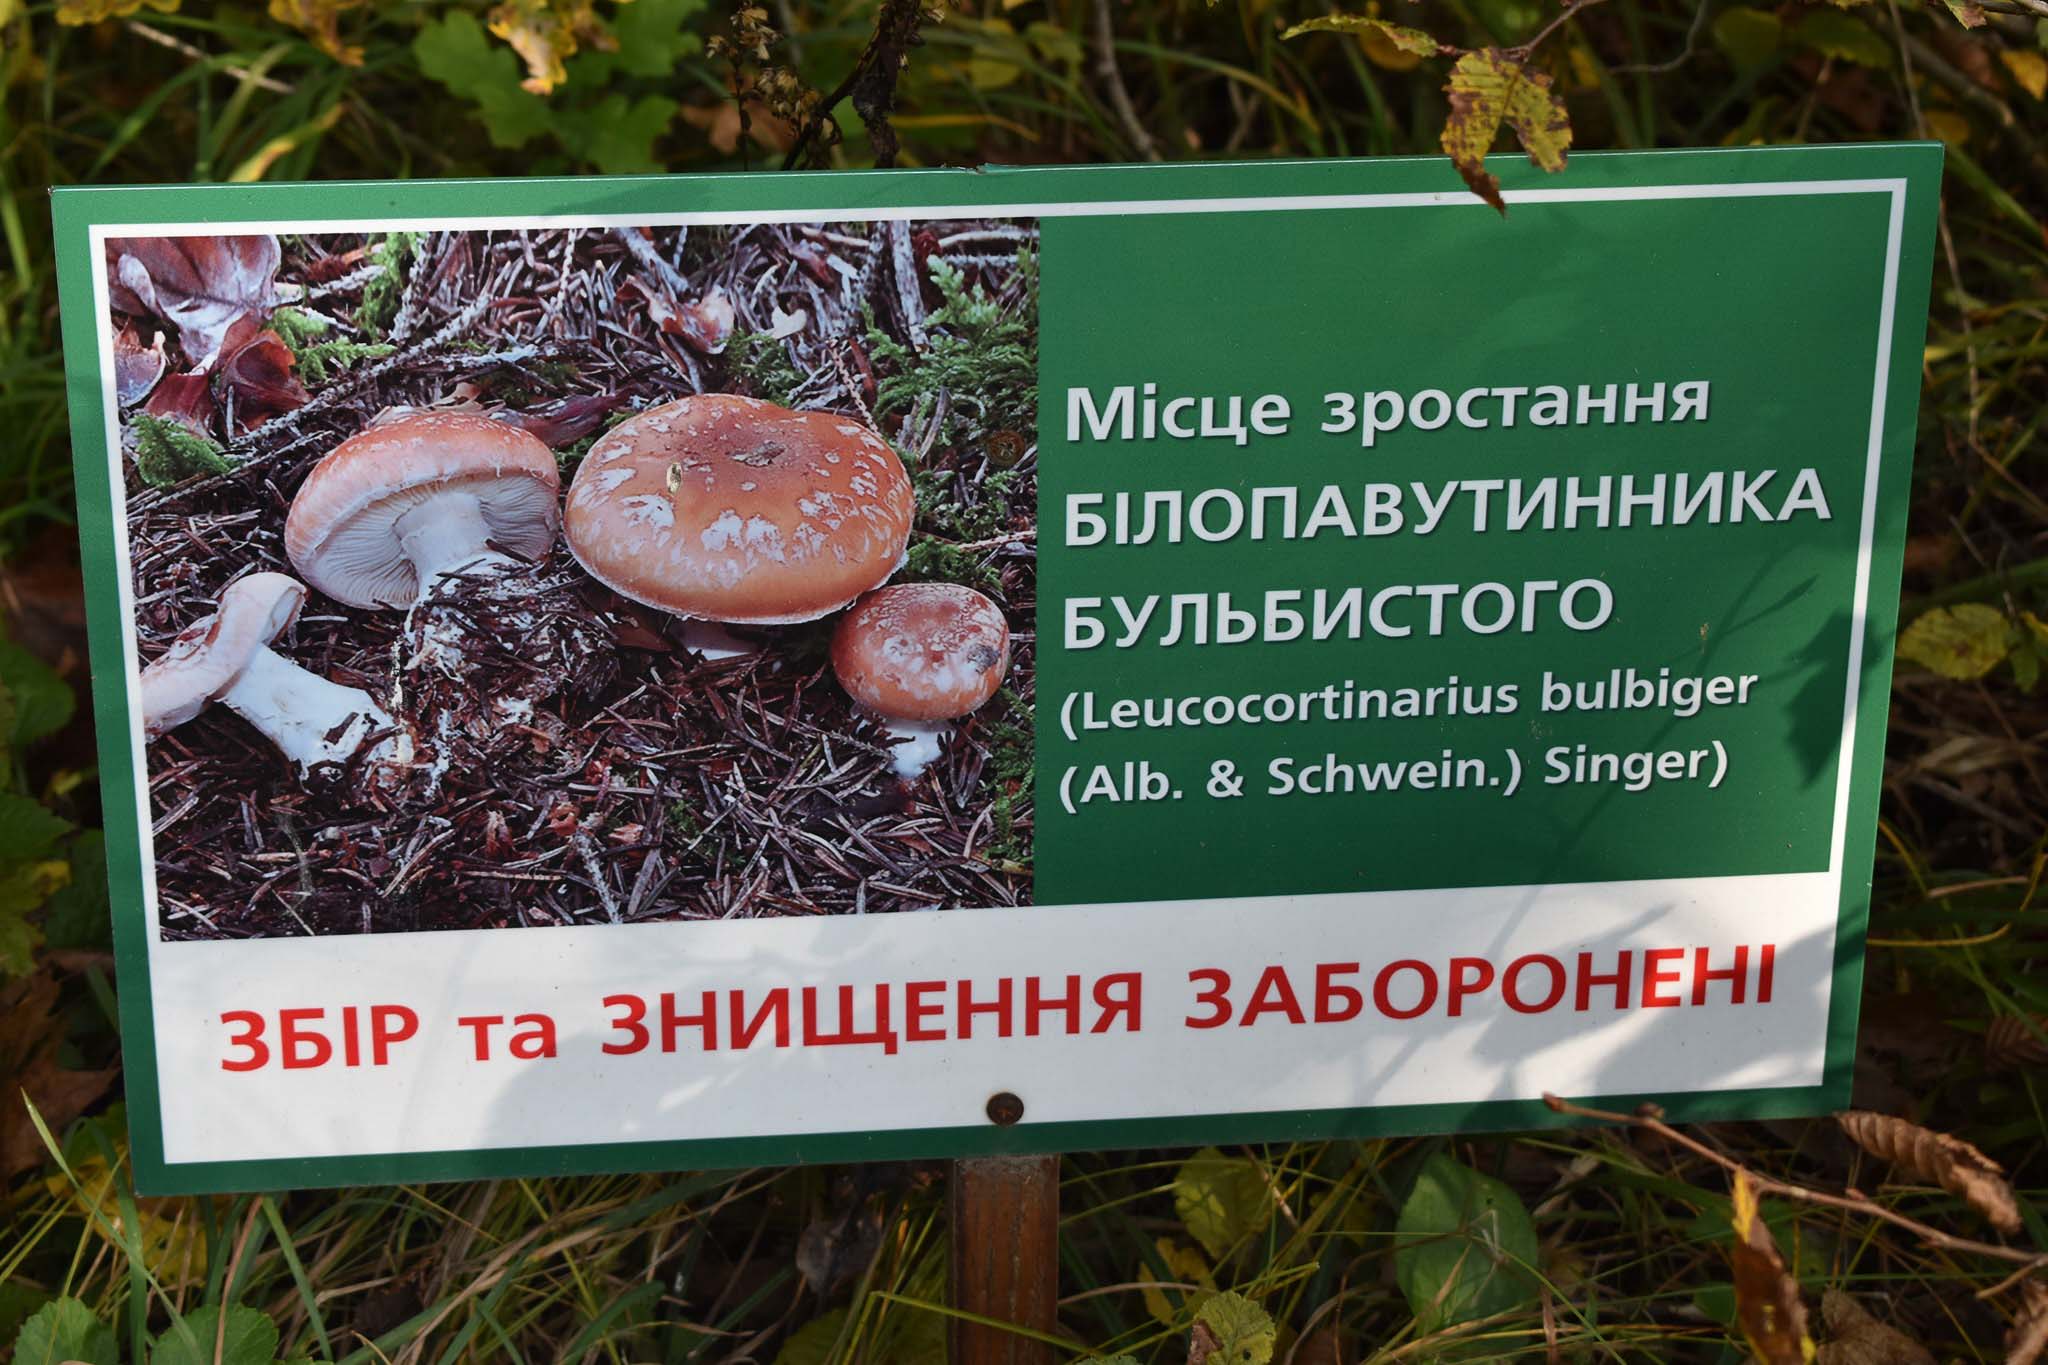 У Галицькому нацпарку люди нищать рідкісні гриби, попри встановлені таблички (ФОТО)